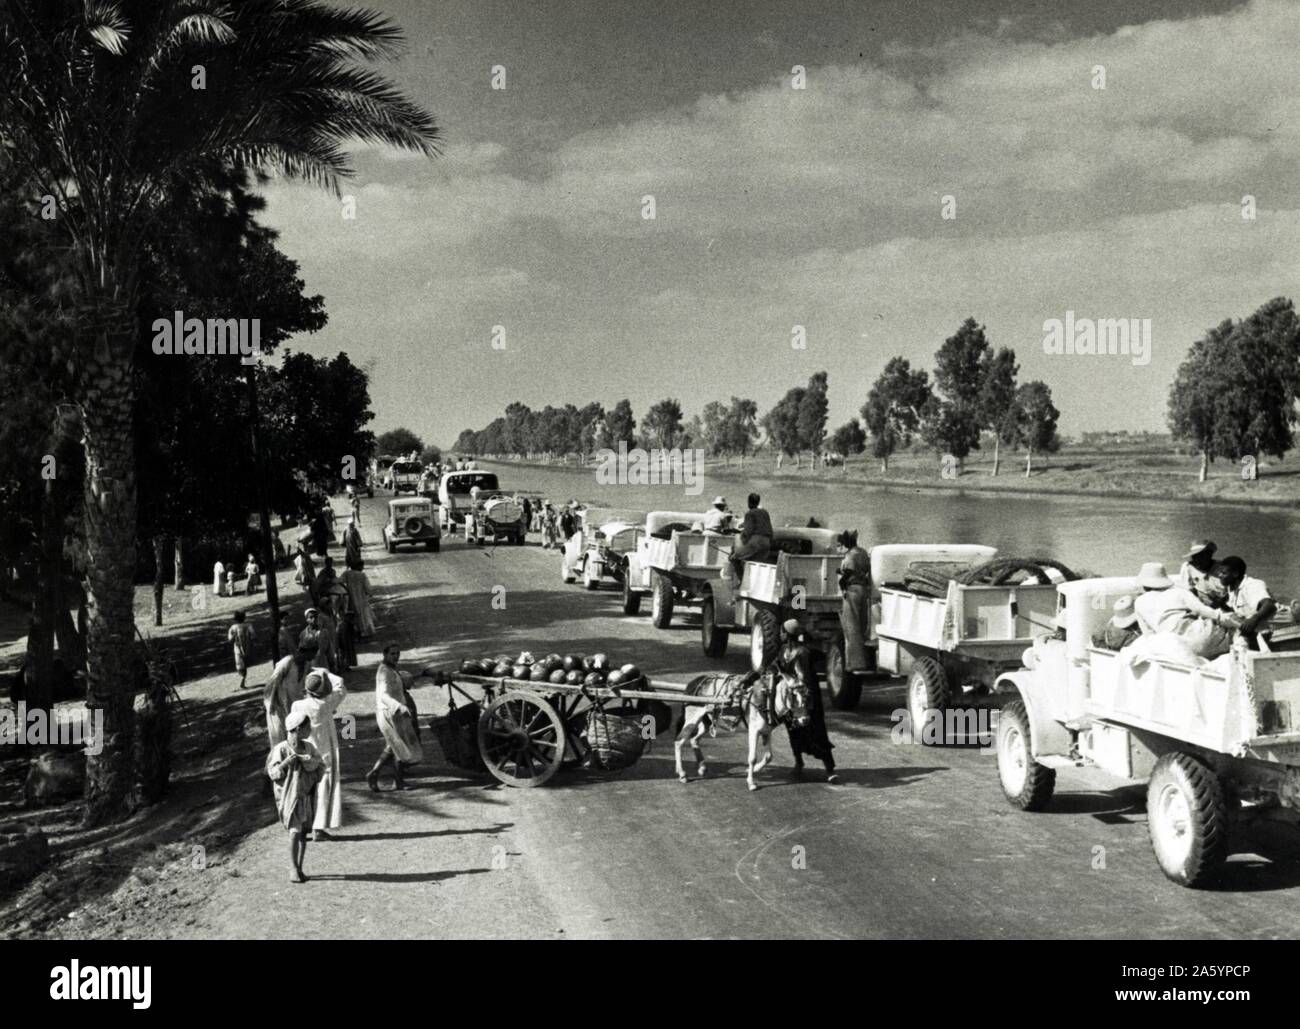 Photographie d'aller de l'avant des véhicules militaires à la bataille dans les domaines de l'Egypte au cours de la Seconde Guerre mondiale. Datée 1942 Banque D'Images